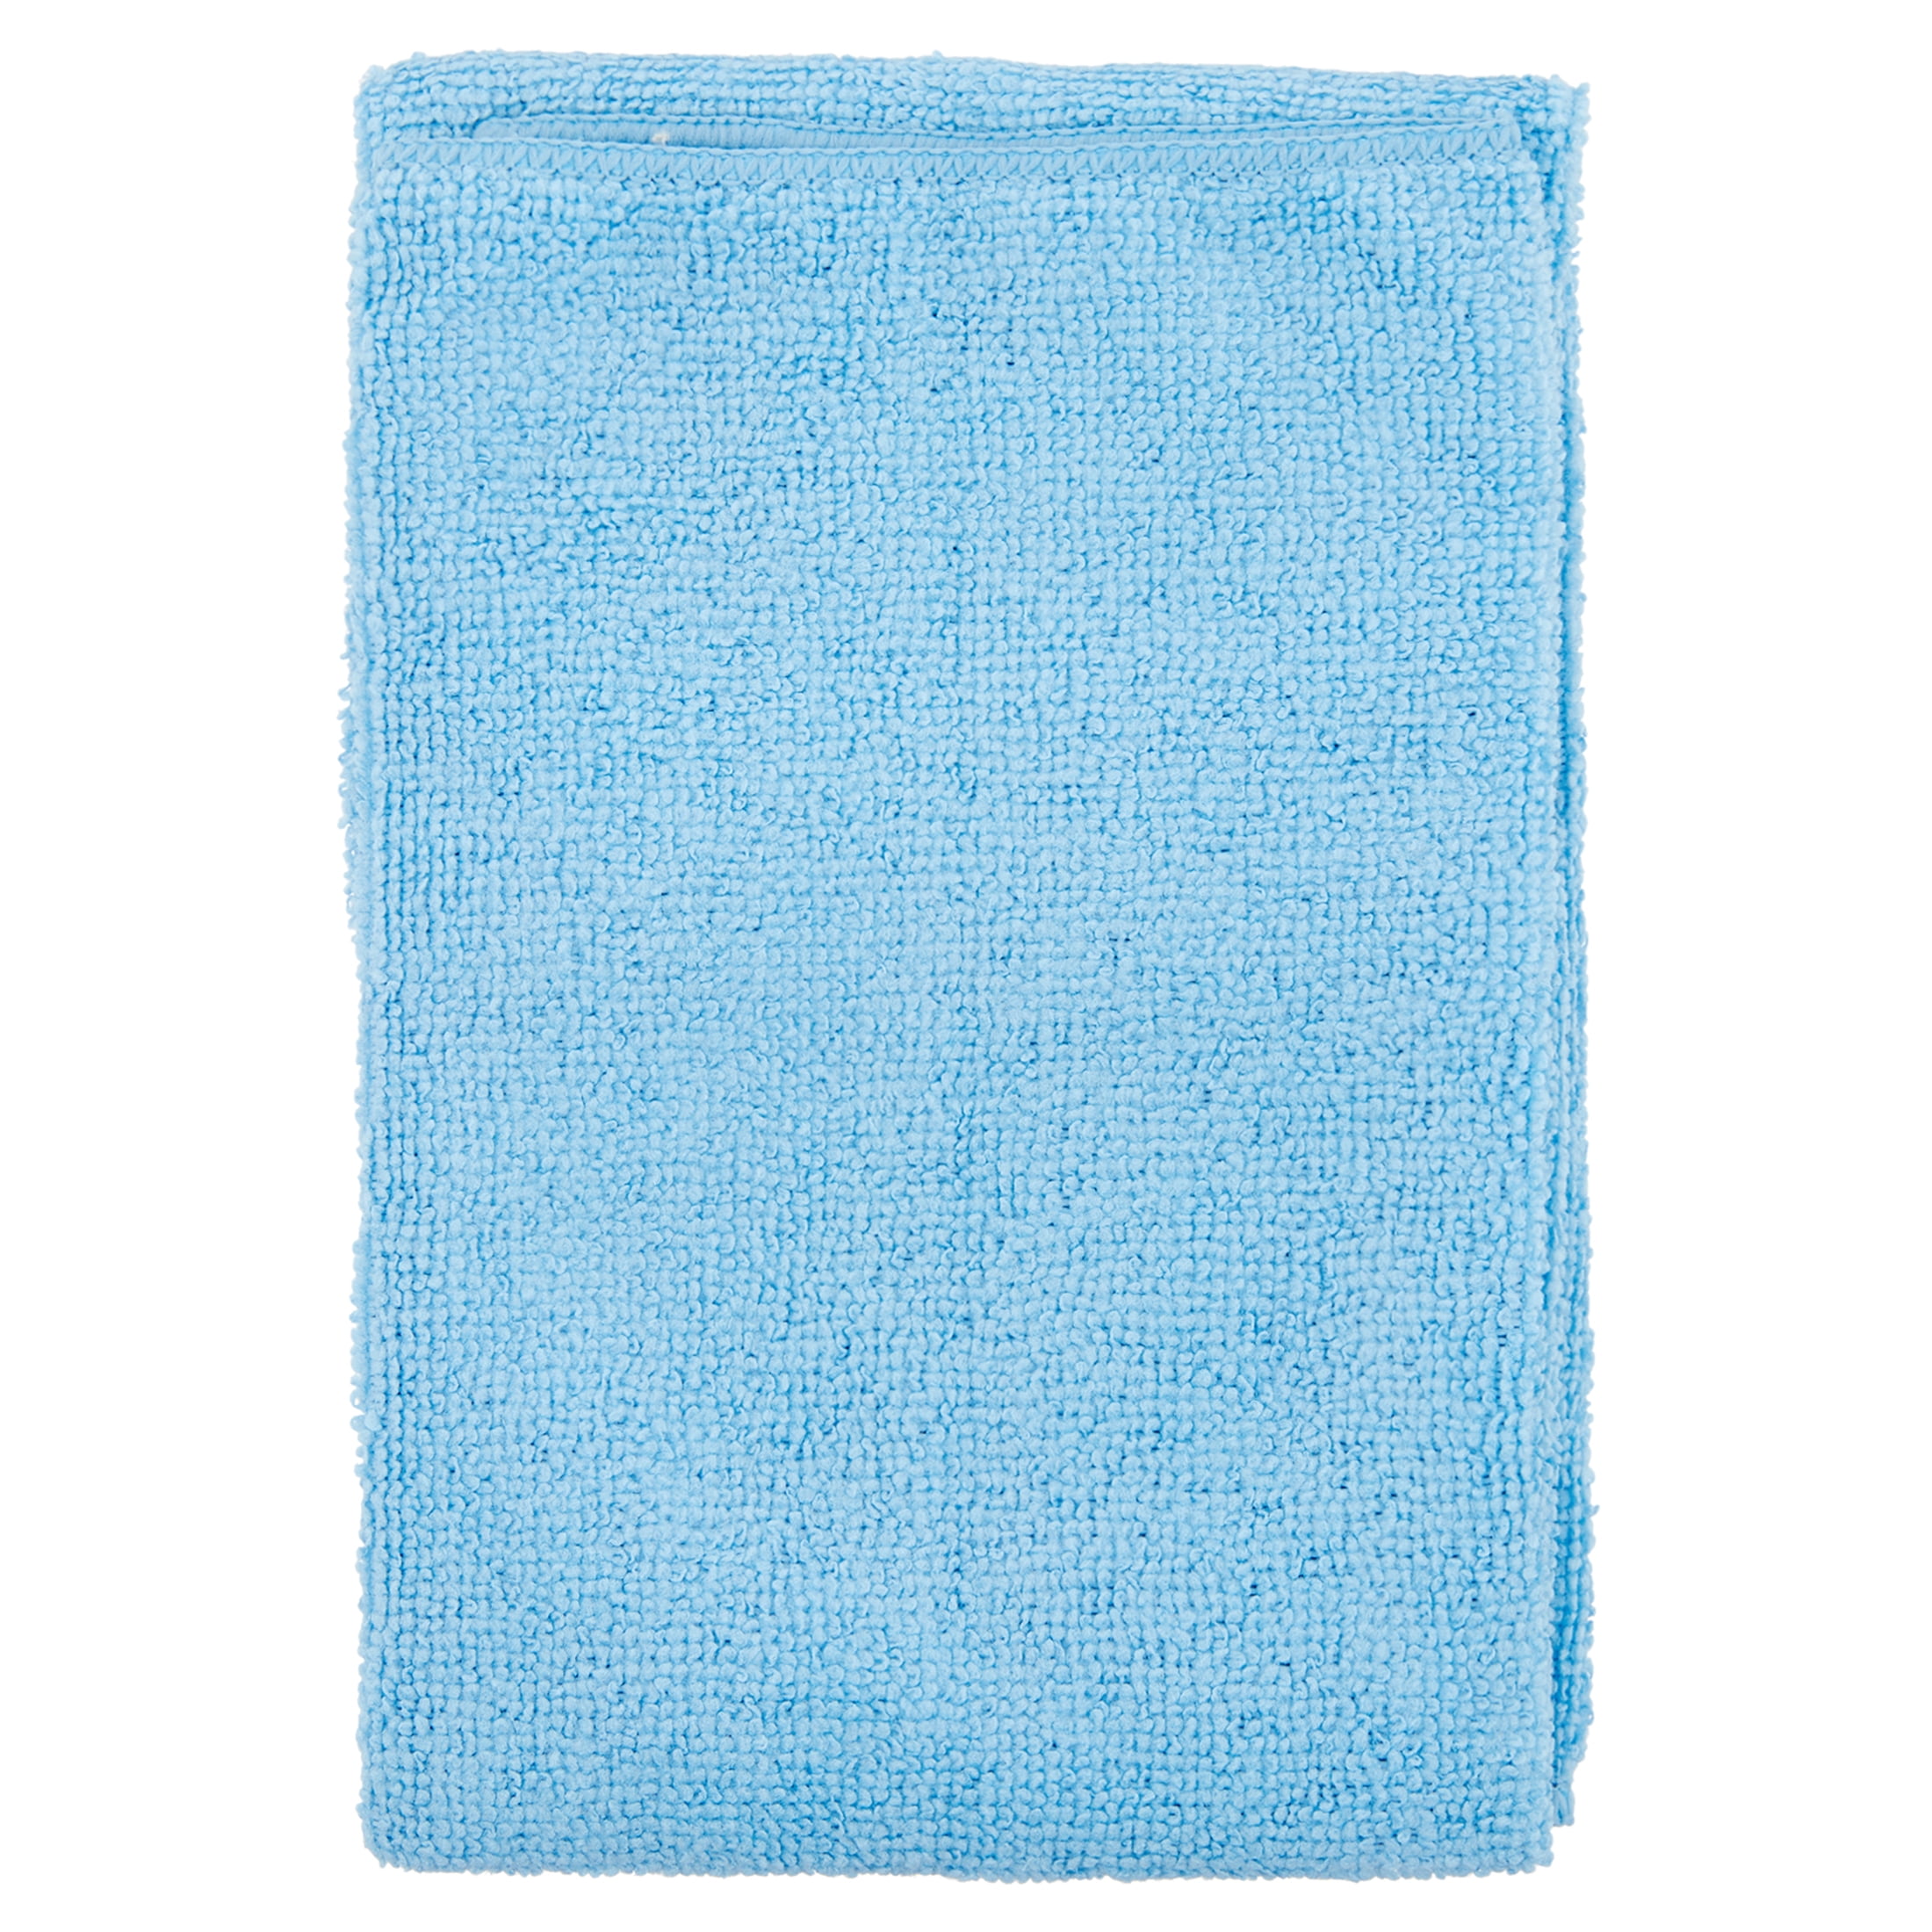 Microfiber Dish Towels — Home/Work Santa Cruz